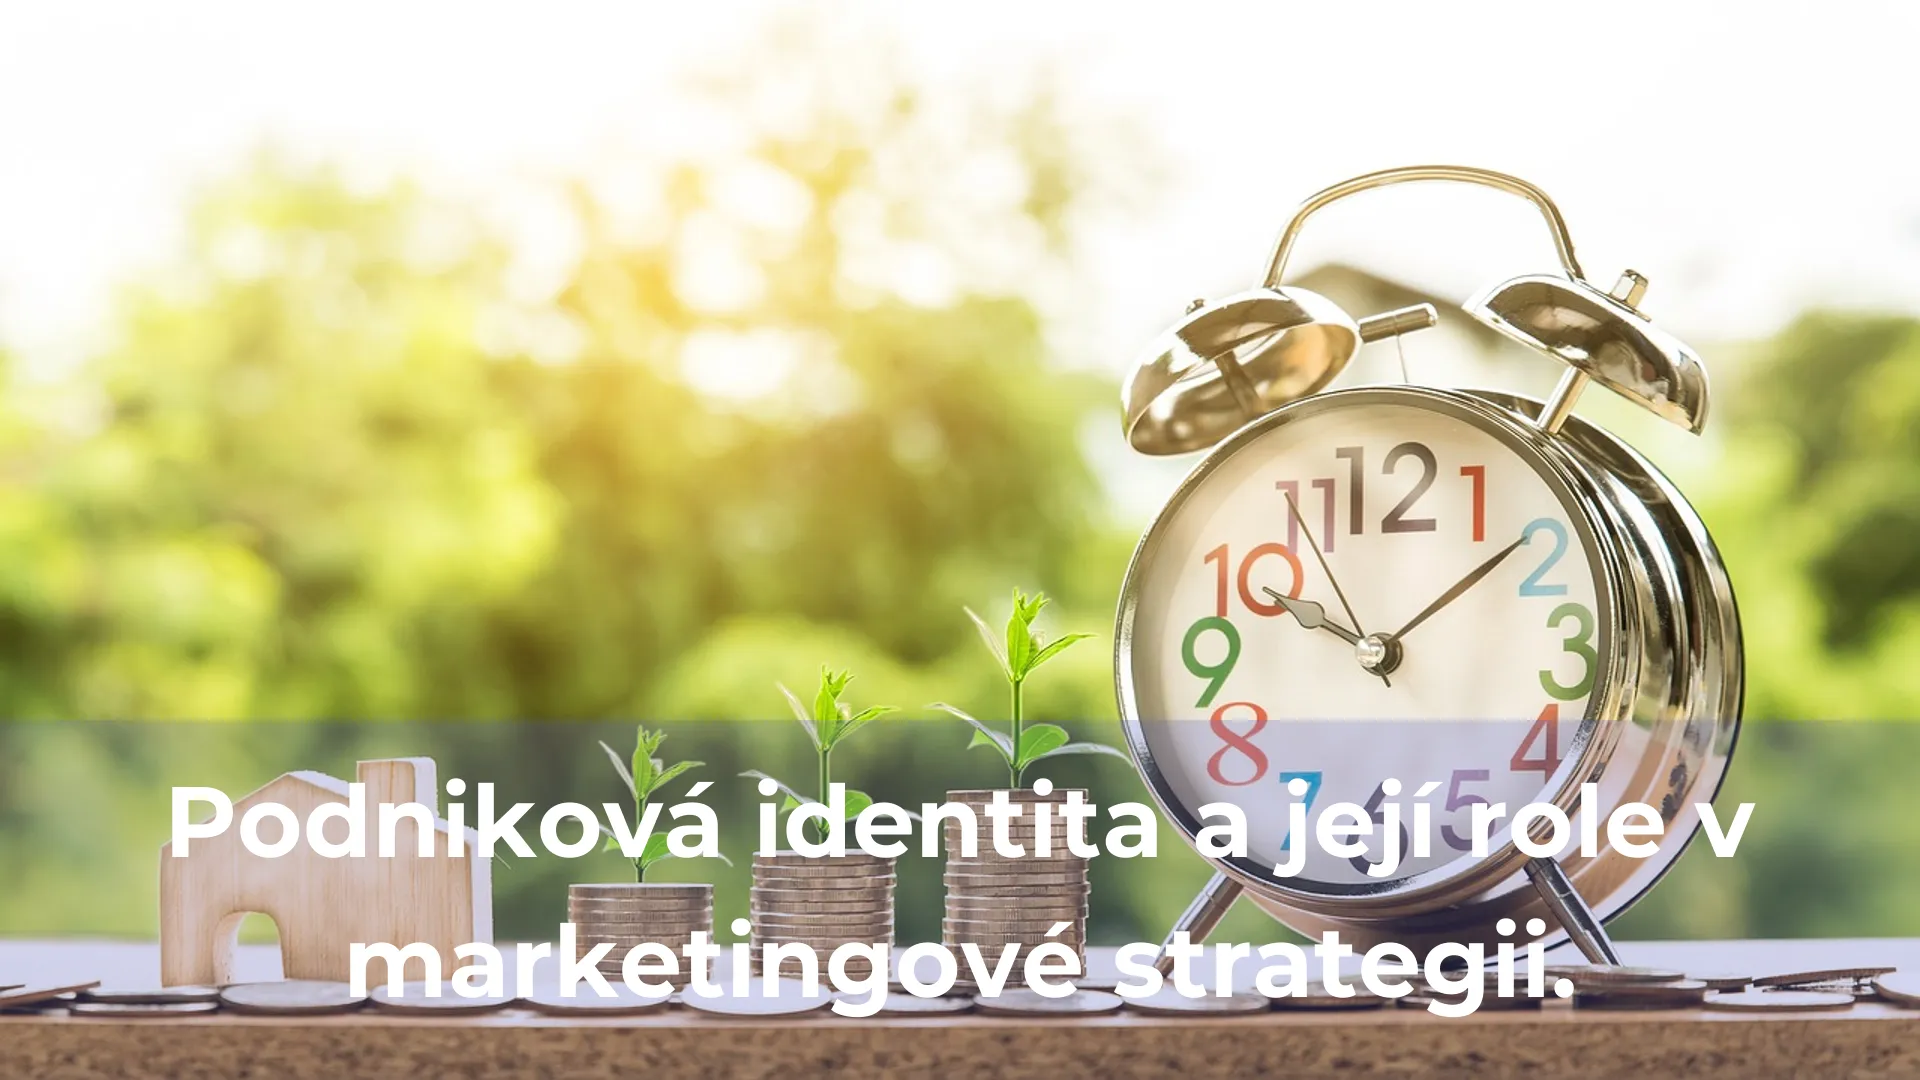 Podniková identita a její role v marketingové strategii